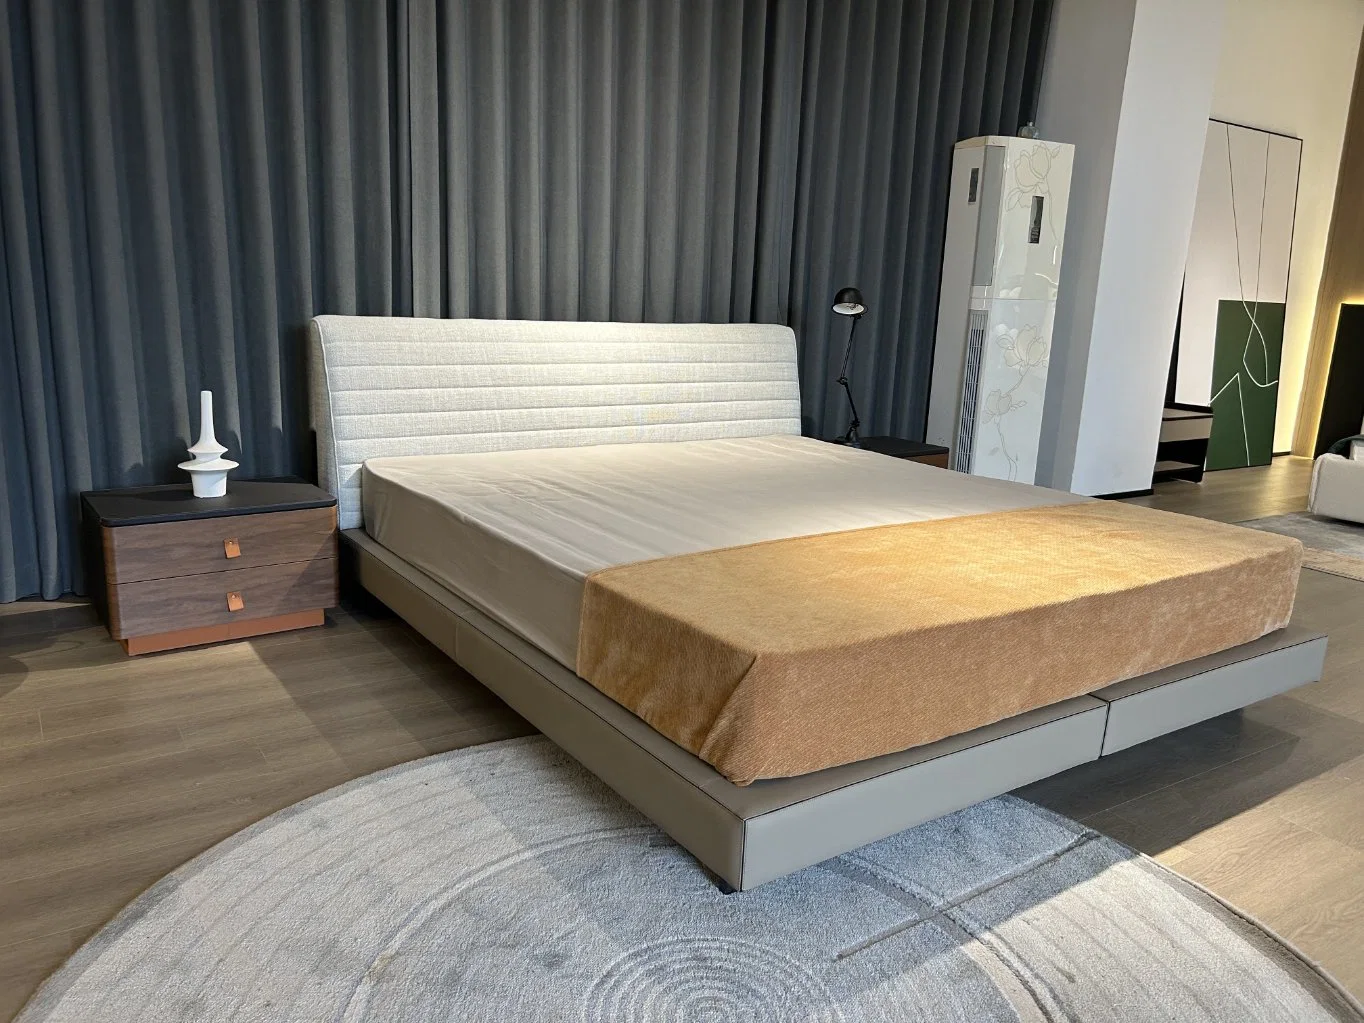 Muebles modernos de la villa italiana Roger, ropa de cama de alto grado Dormitorio Minimalism cama king